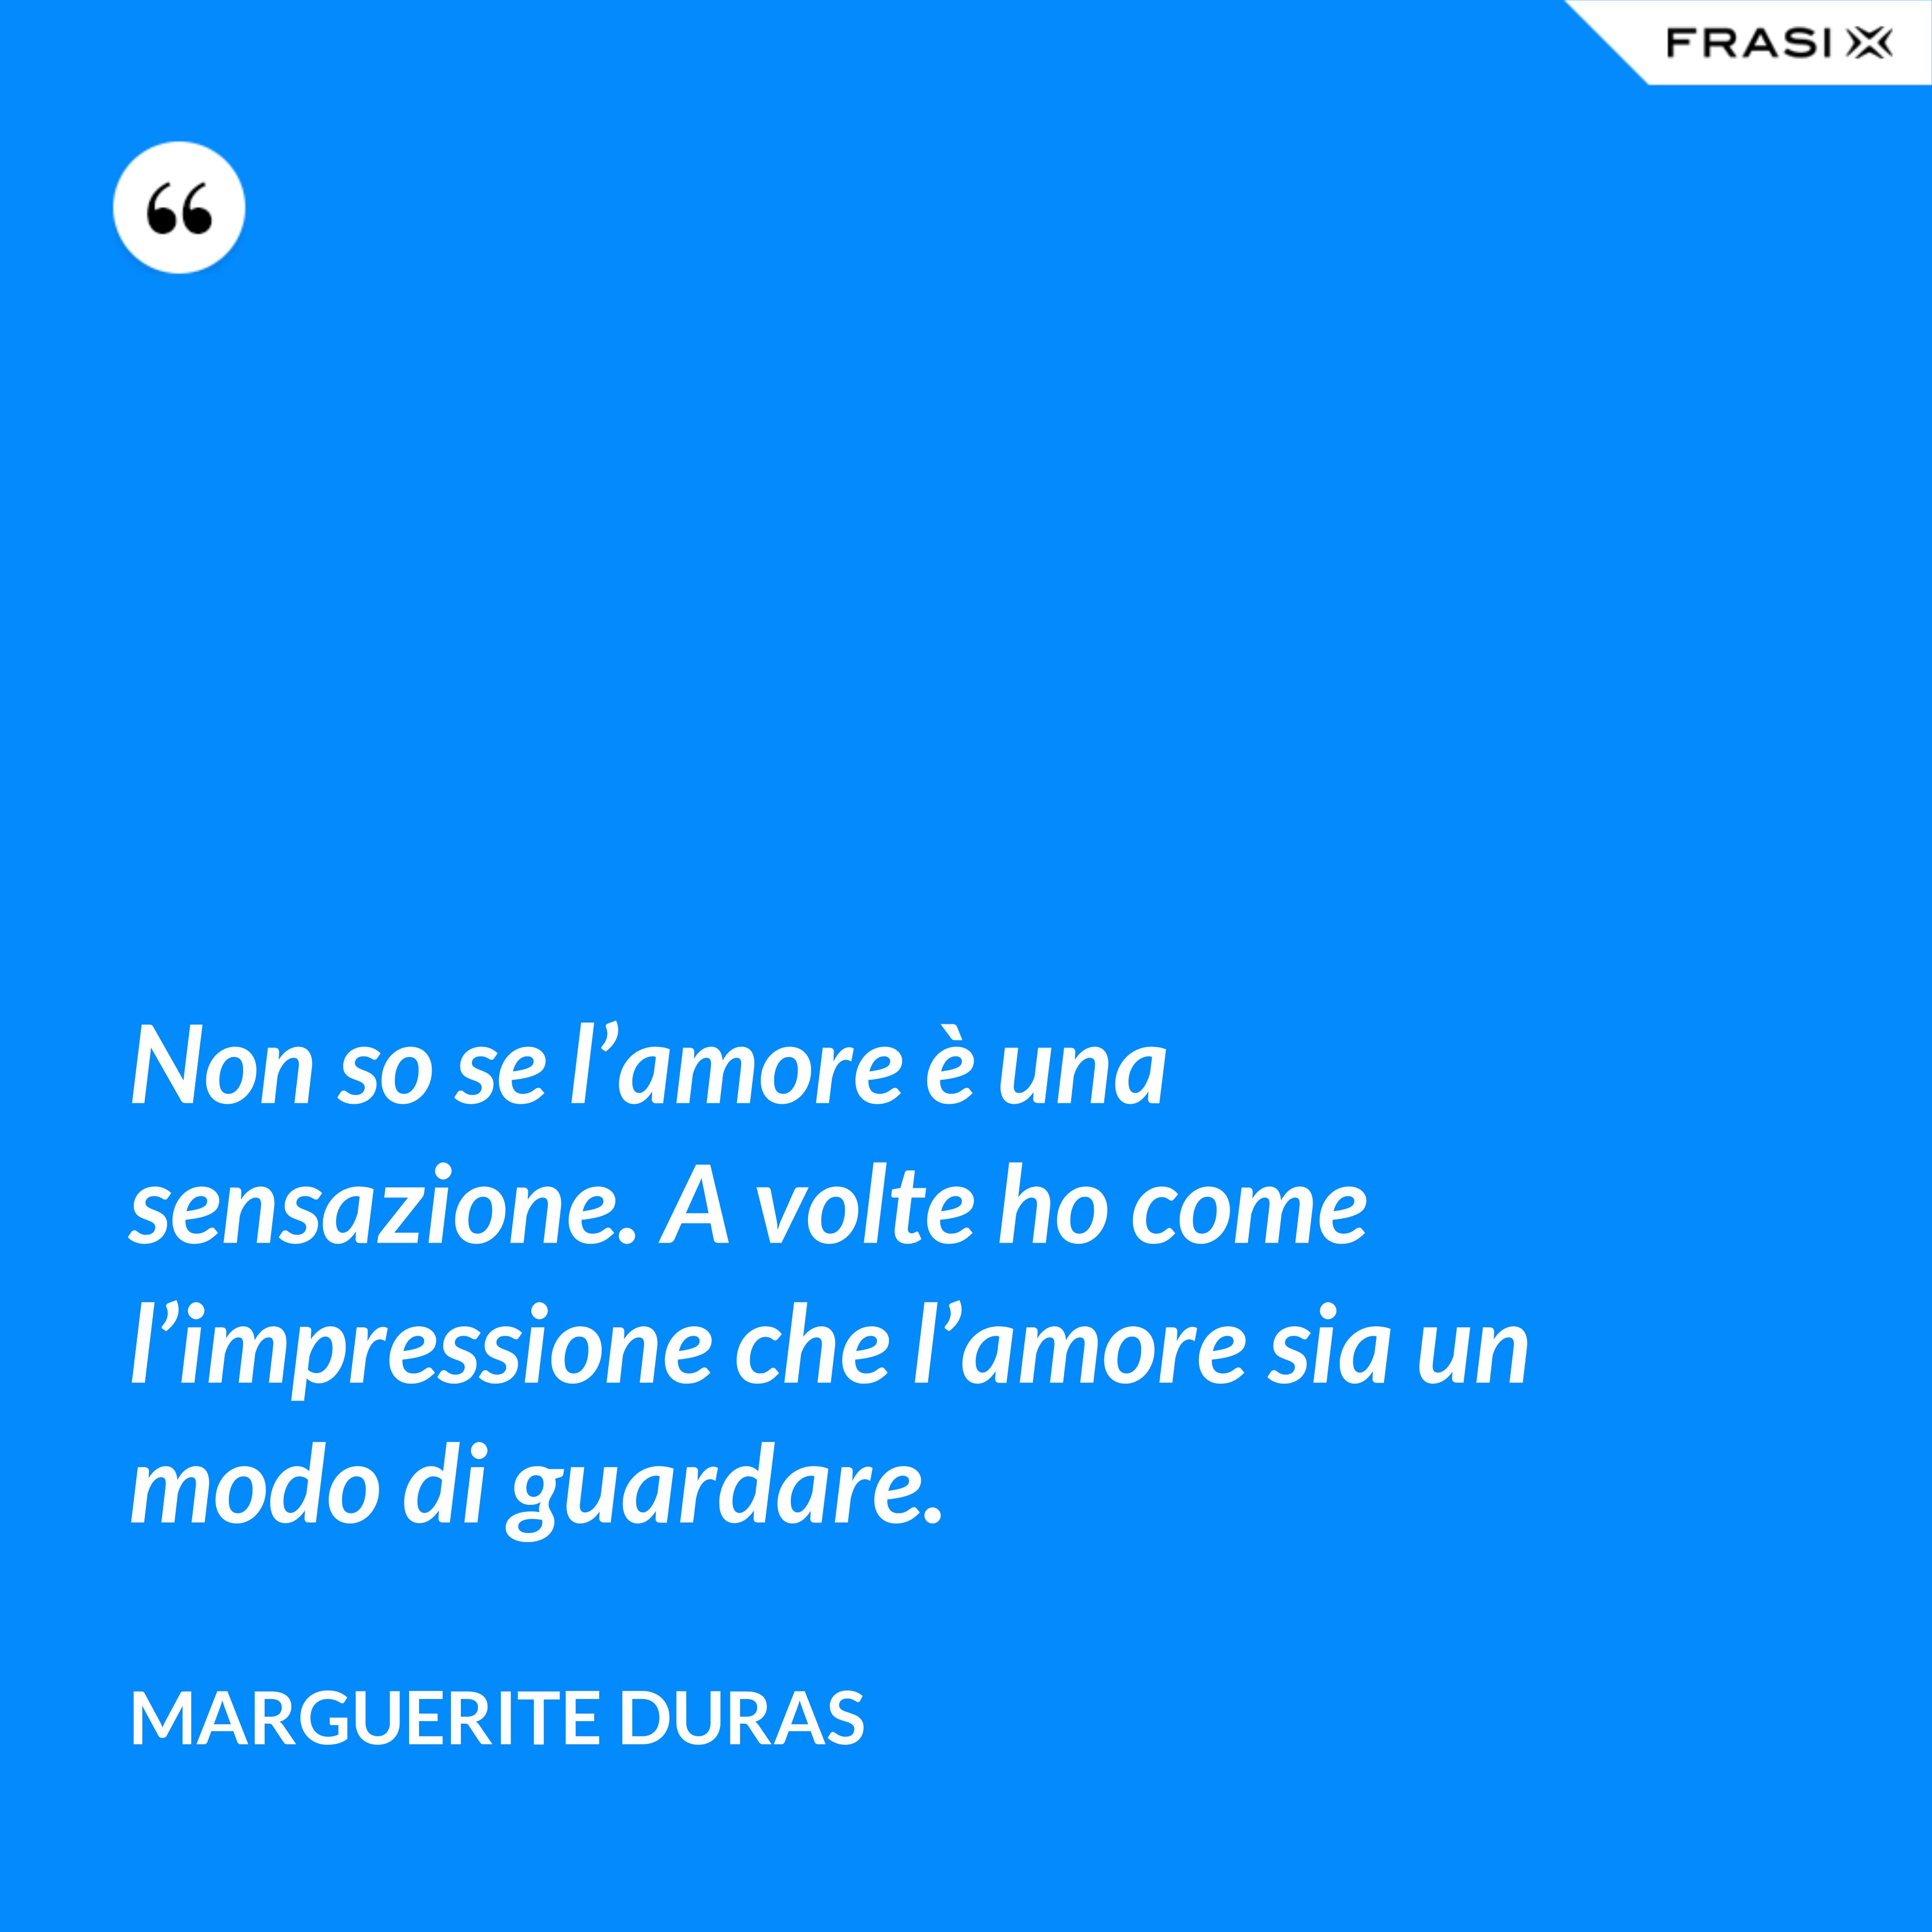 Non so se l’amore è una sensazione. A volte ho come l’impressione che l’amore sia un modo di guardare. - Marguerite Duras